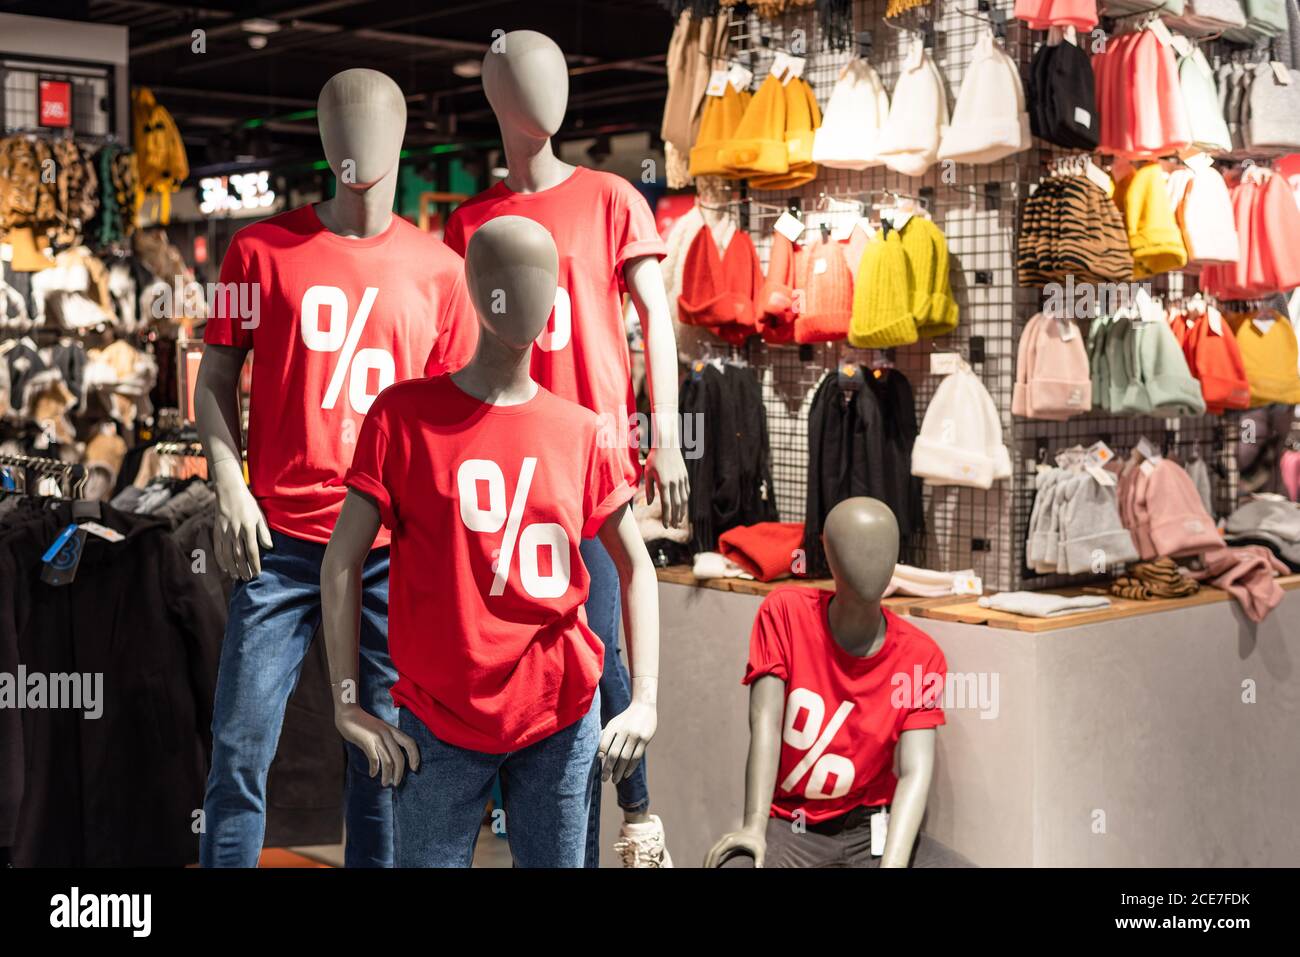 Manichini vestiti in t-shirt rossa con segno percentuale e jeans blu nel centro commerciale. Stagione di sconti e vendite. Black Friday Foto Stock